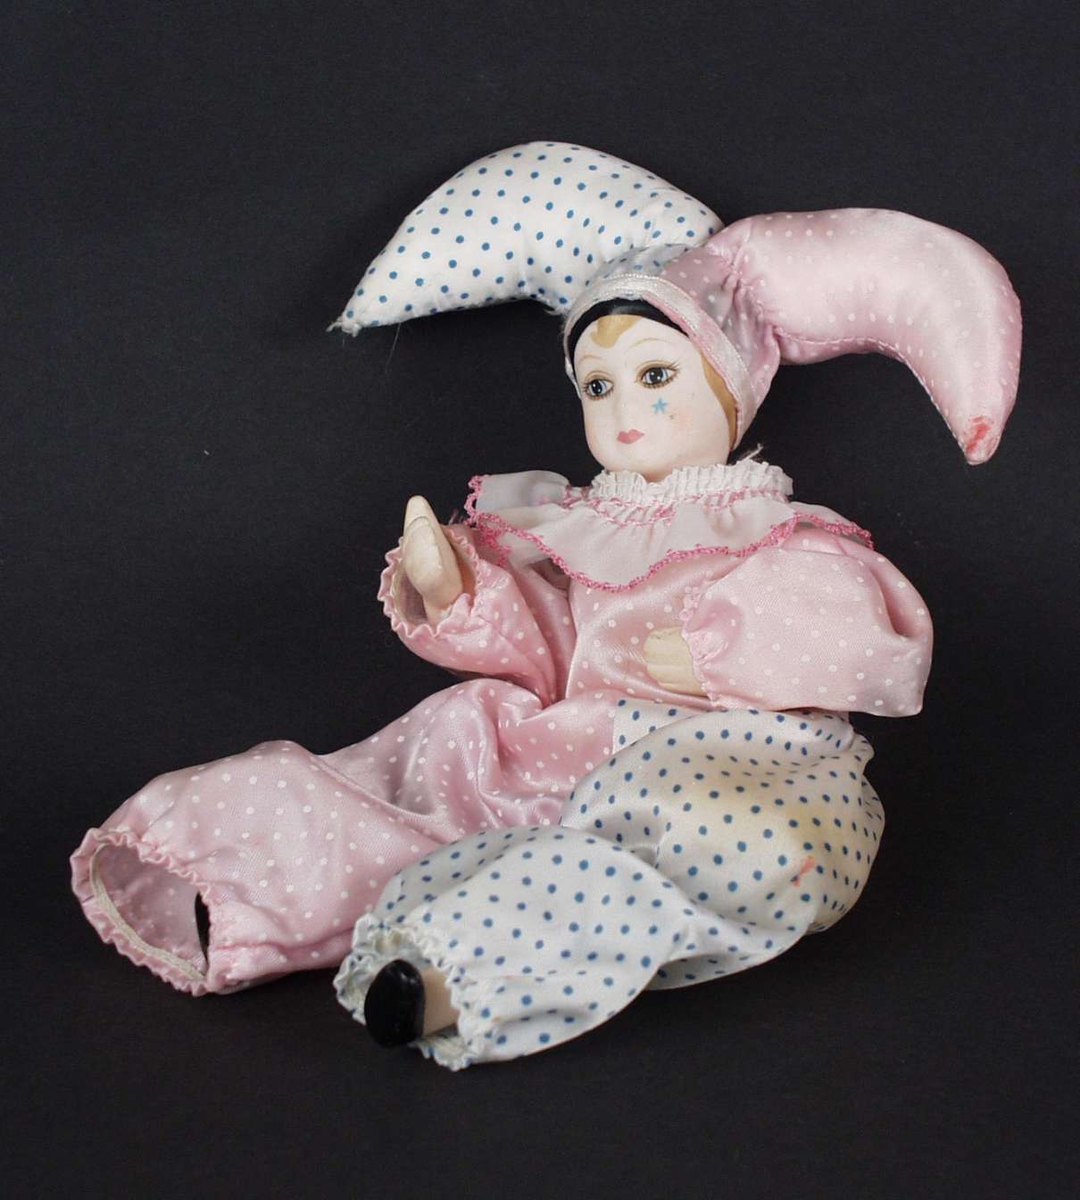 Dukke med hode, hender og bein i keramikk. Den har klovneklær i rosa og hvitt.